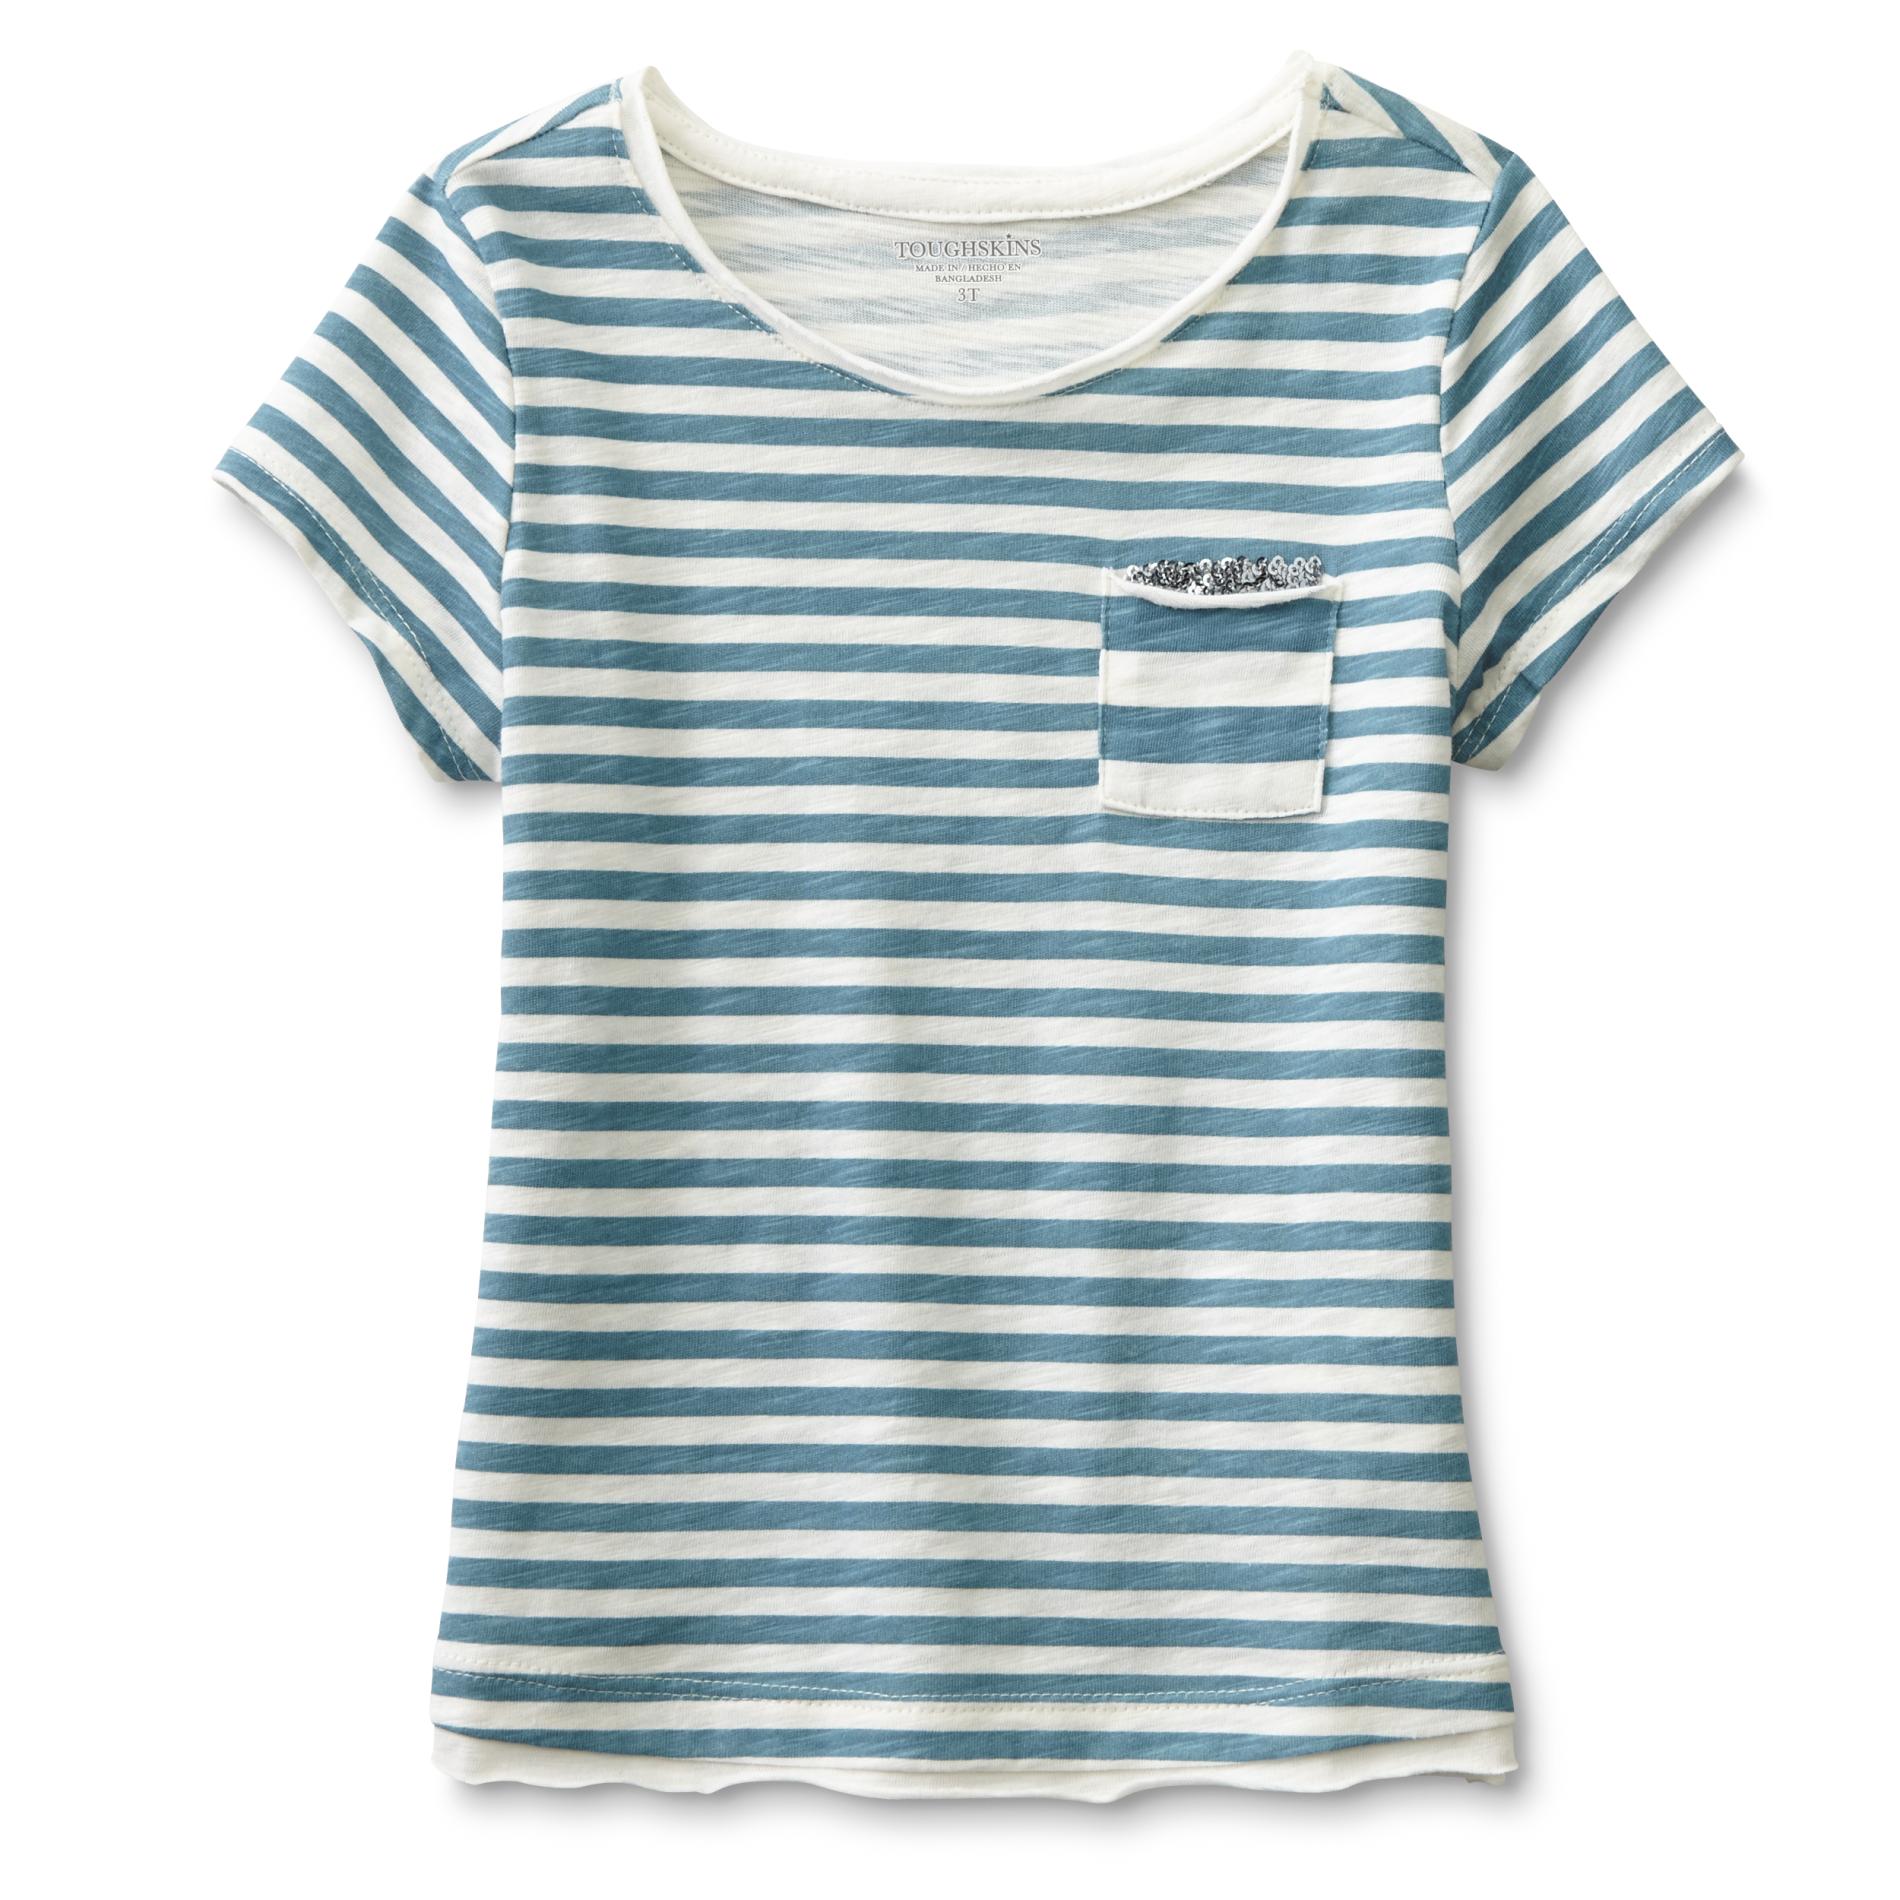 Toughskins Infant & Toddler Girl's Pocket Top - Striped